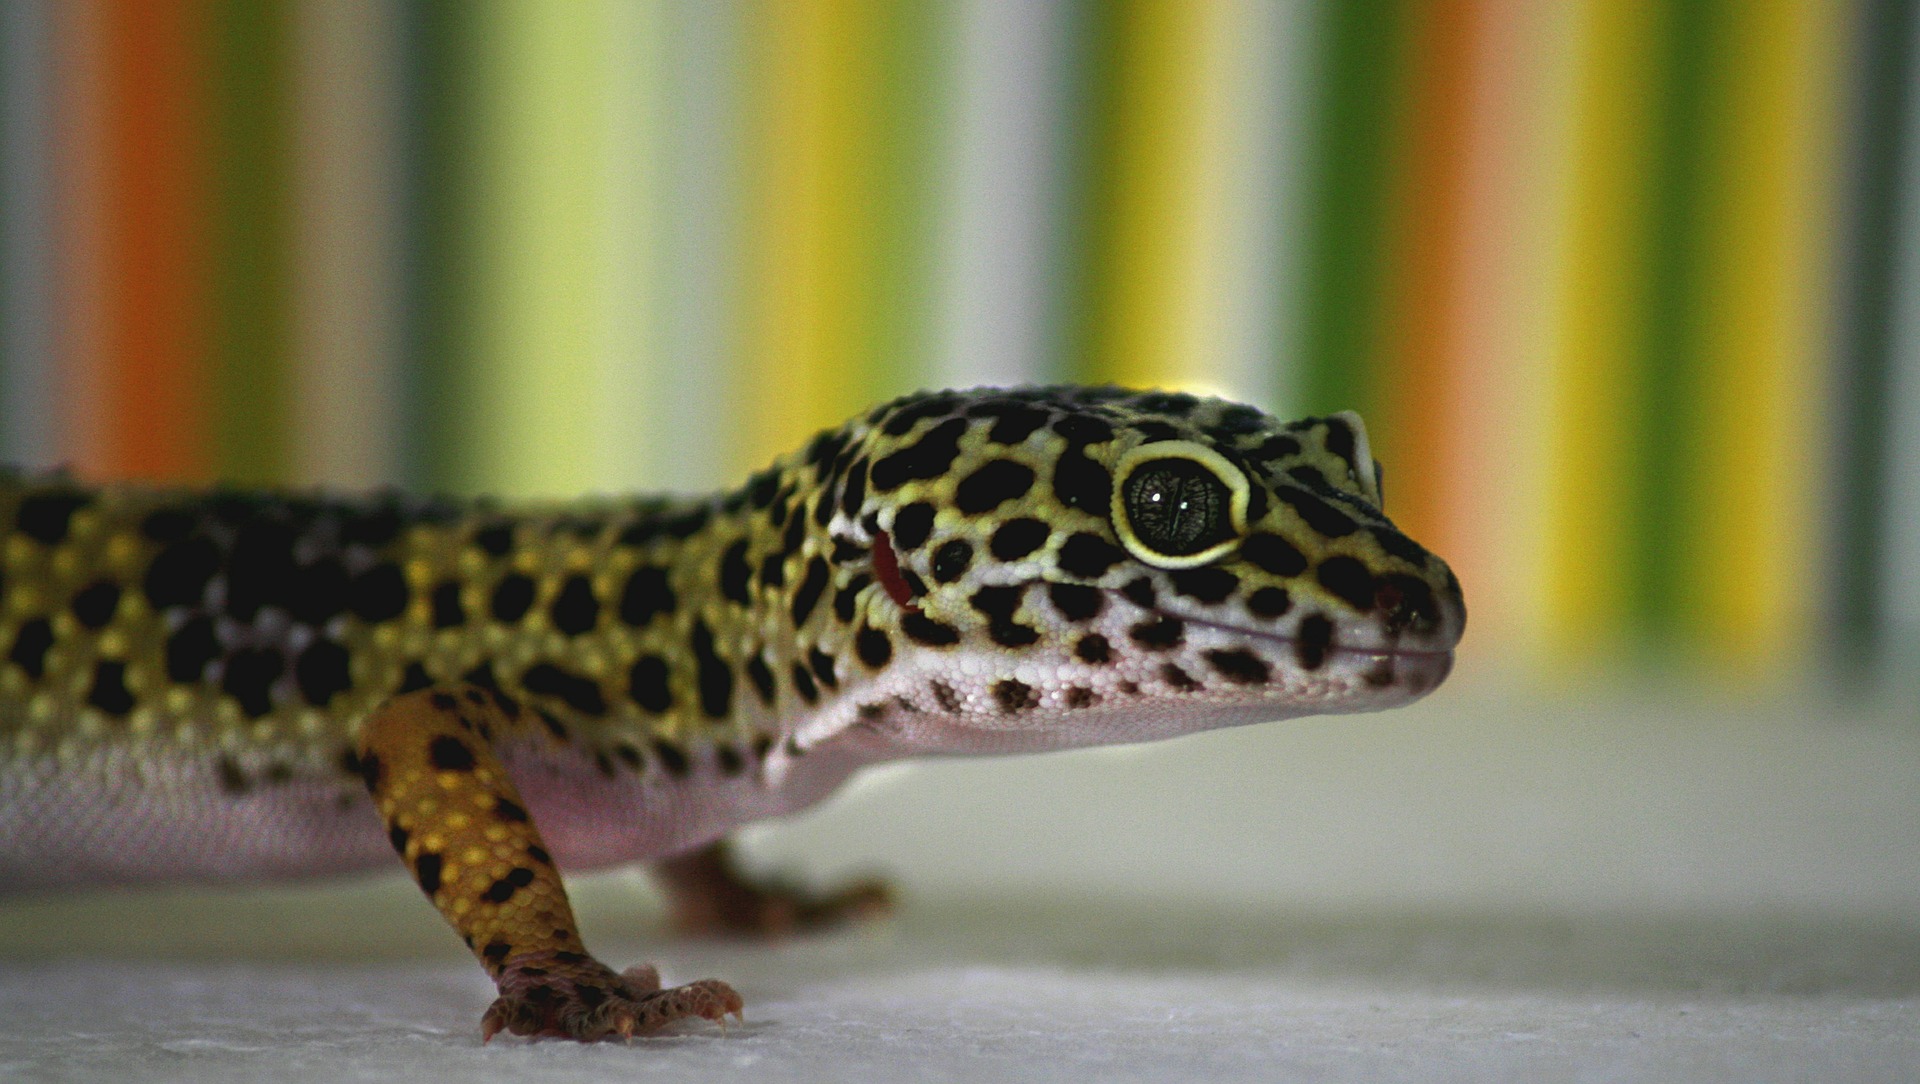 Gekon lamparci jest najczęściej spotykanym gatunkiem gekona w polskich domach.